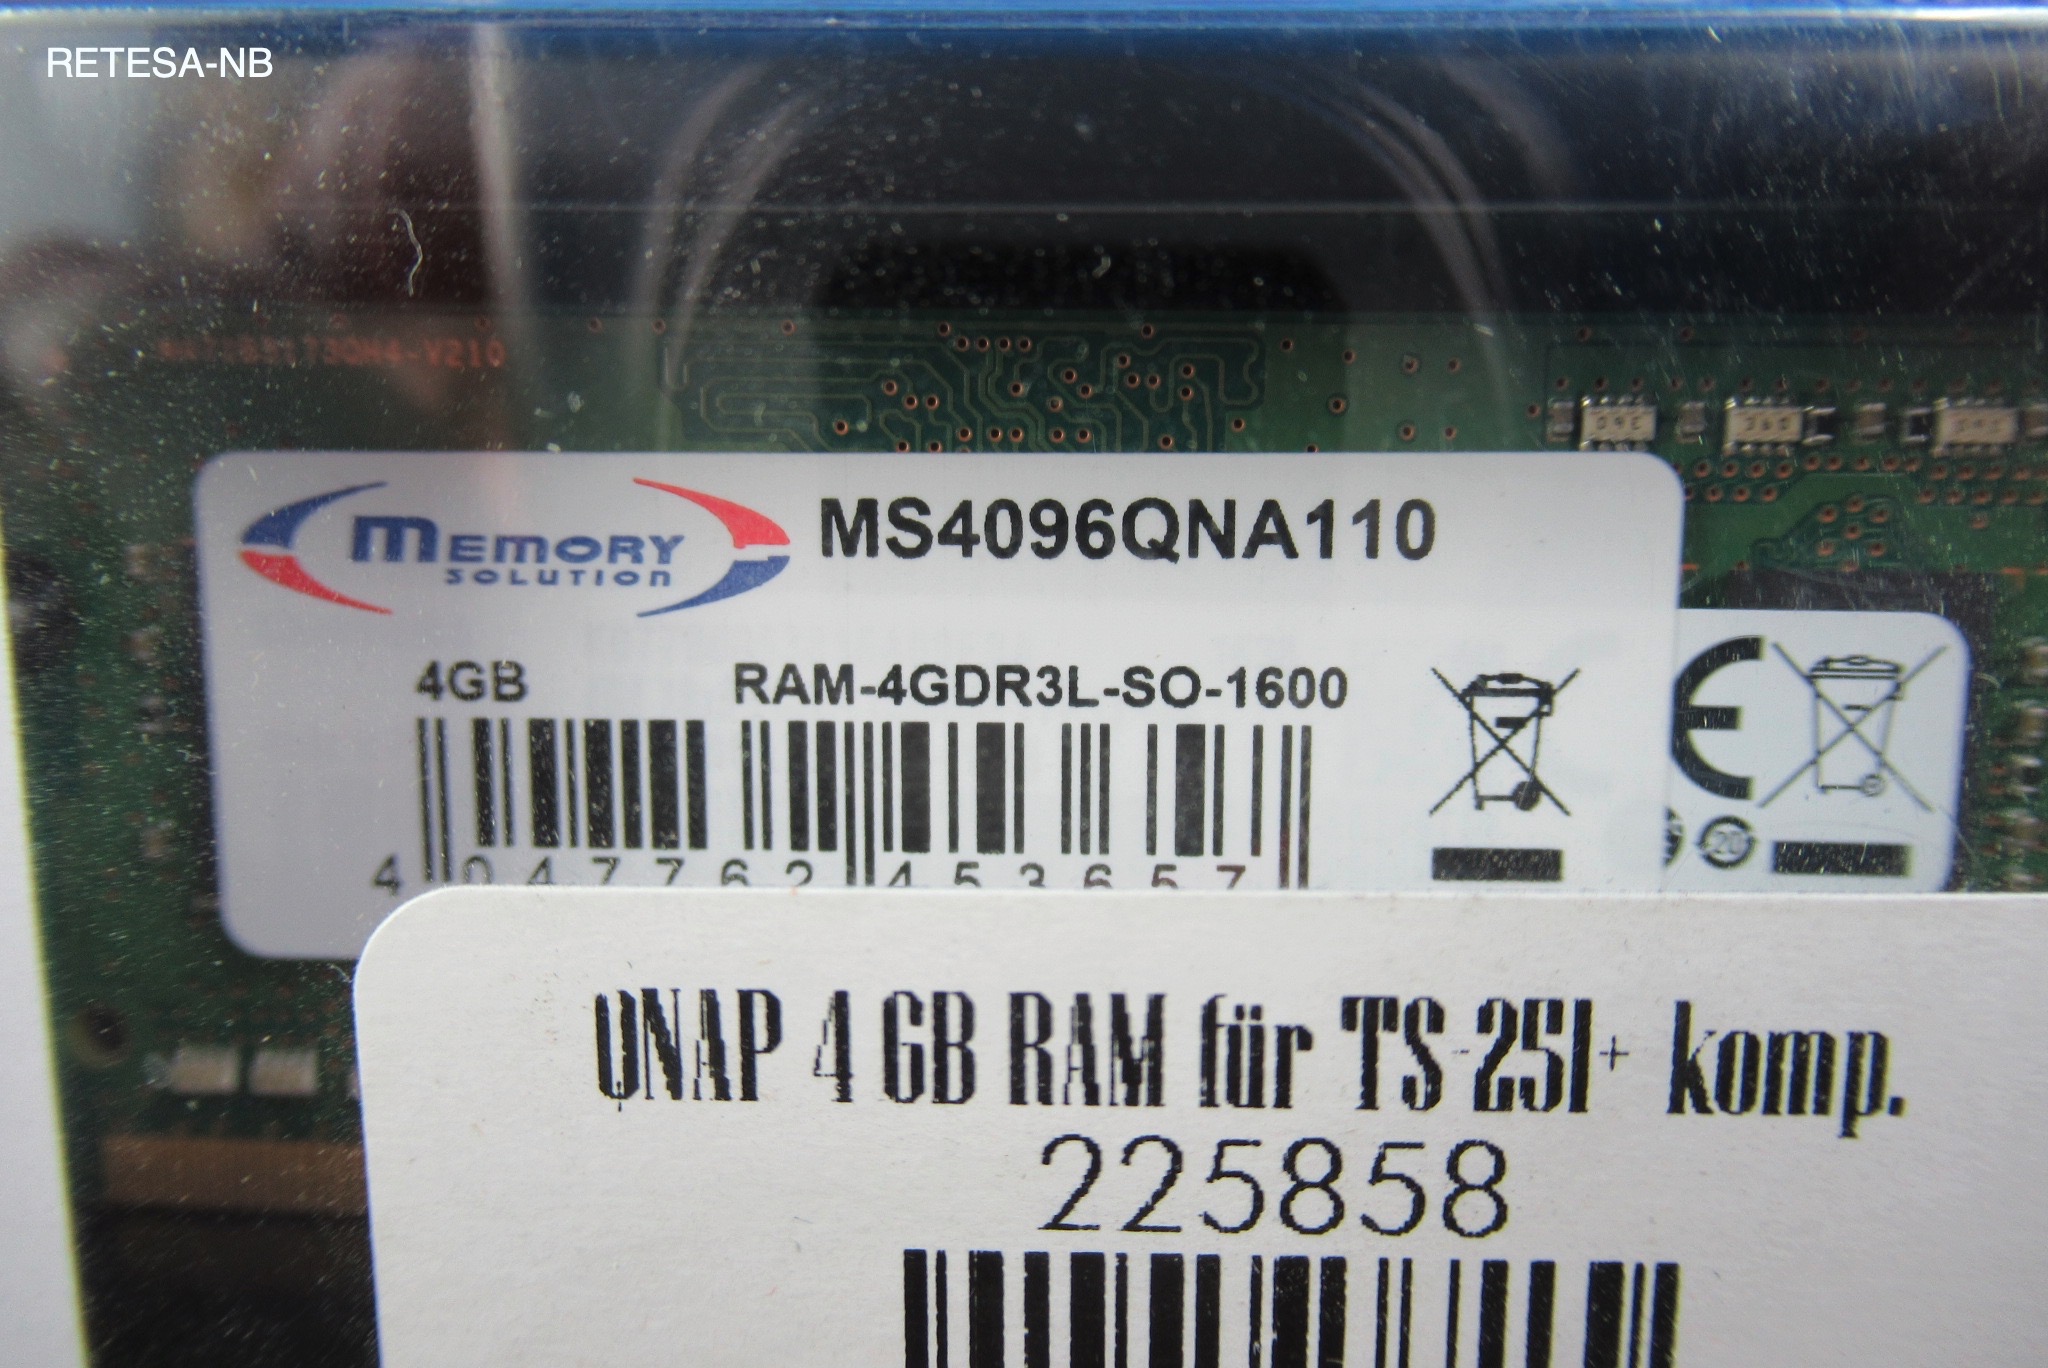 QNAP DDR3-RAM 4GB RAM für TS-251+ kompatibel